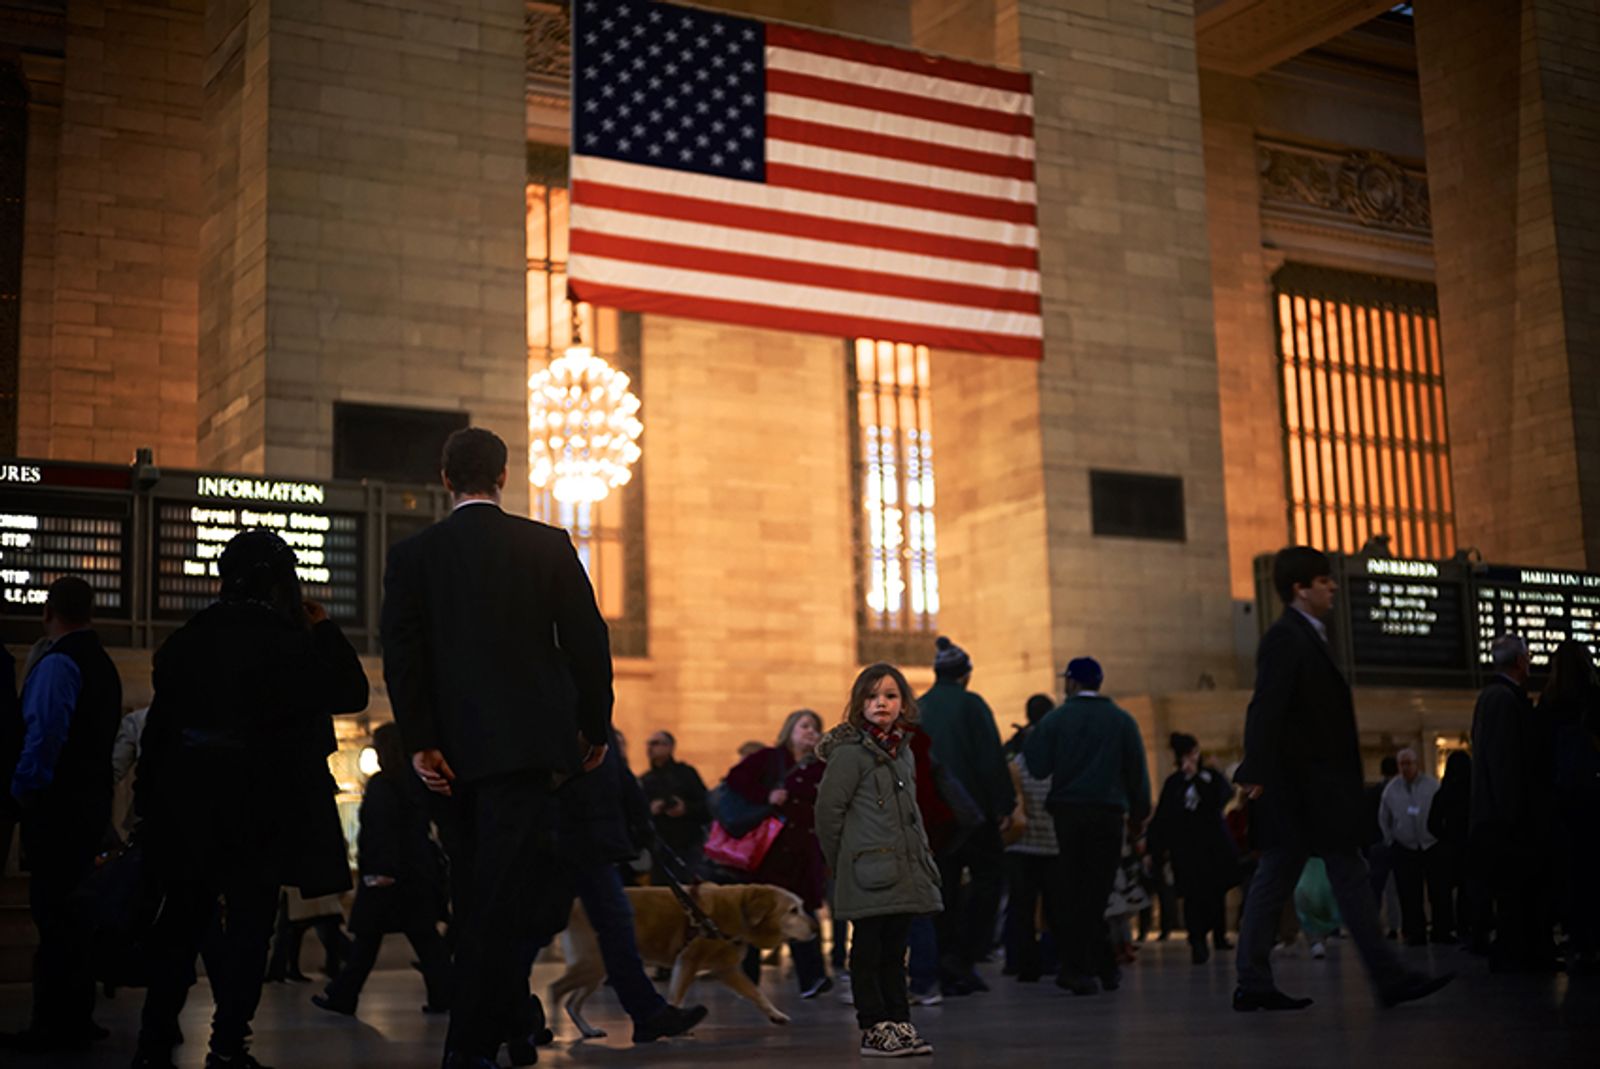 © Thibaut Derien - Grand Central Station, New York